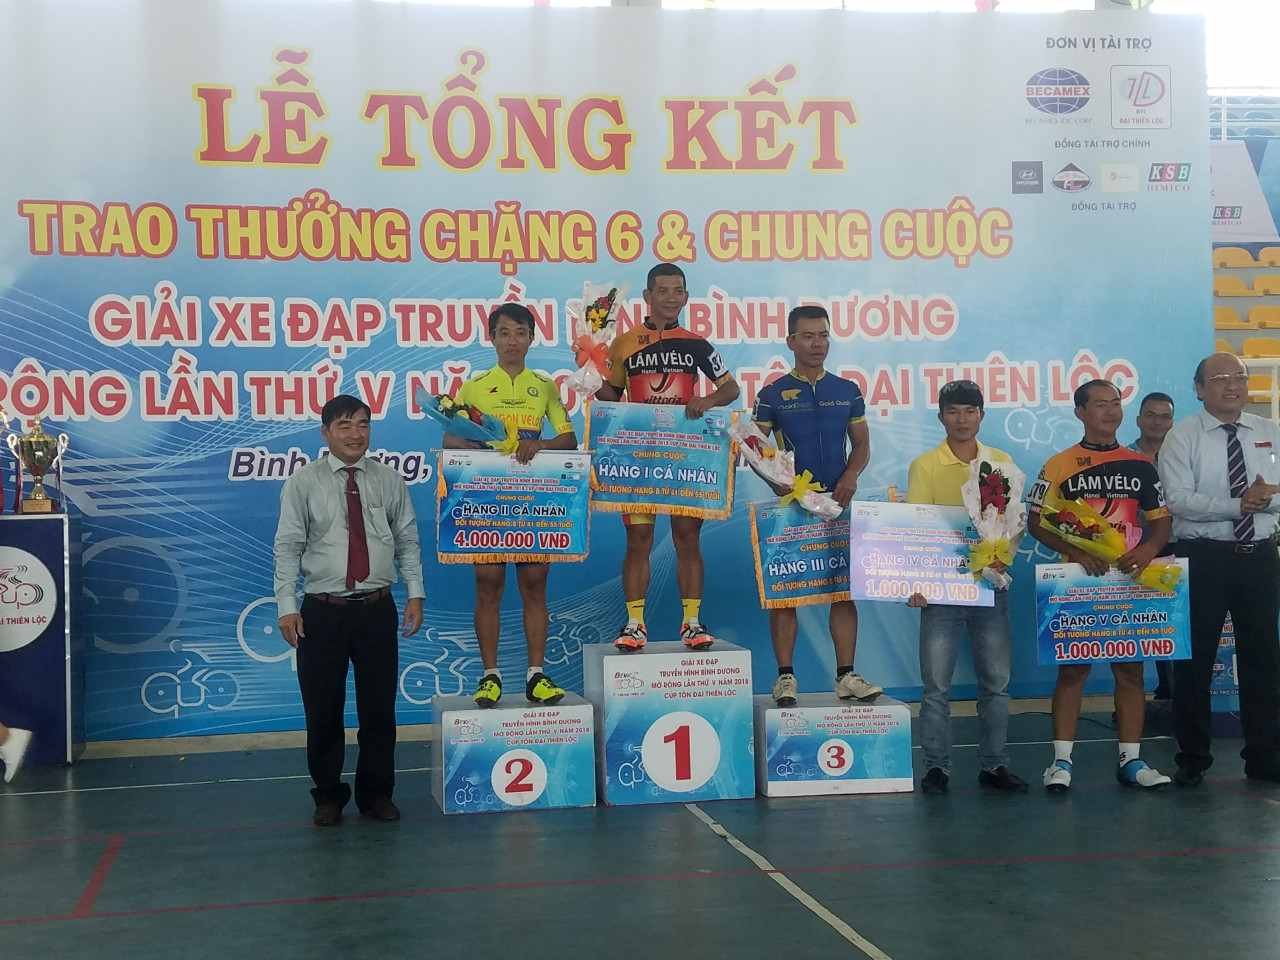 Chặng đua kết thúc mùa giải 2018 giải xe đạp Cup Tôn Đại Thiên Lộc